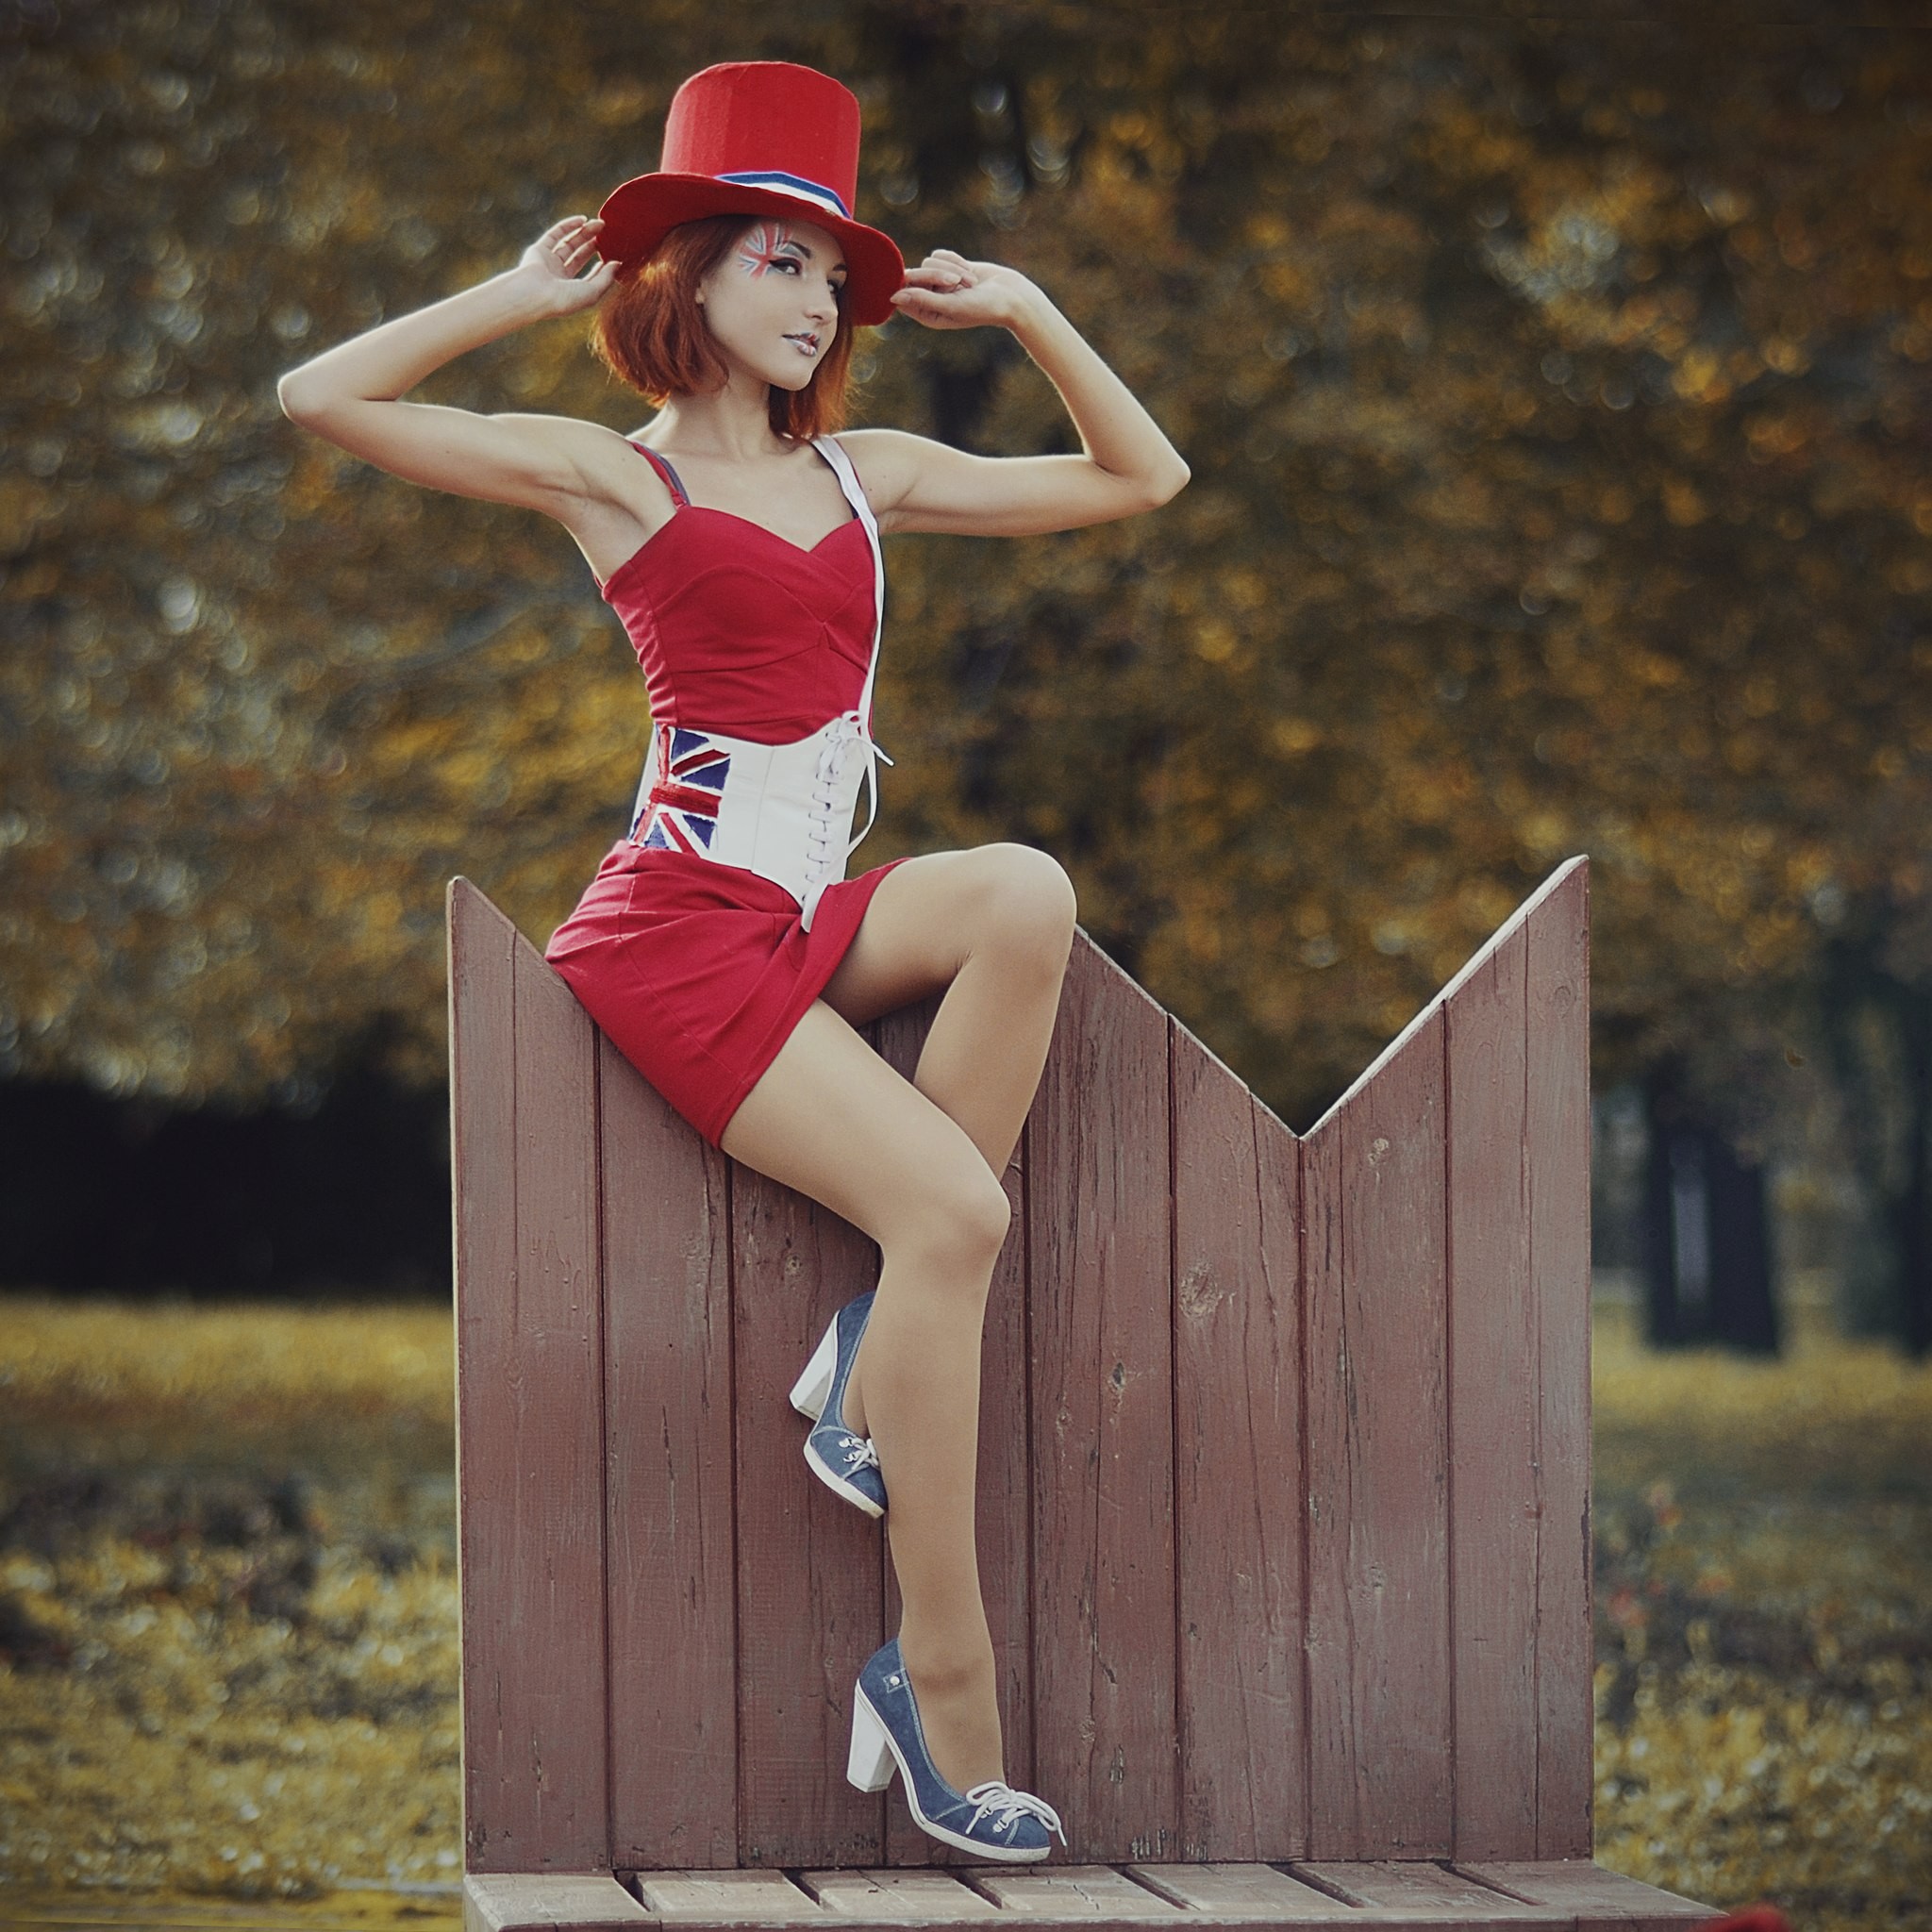 Women Readhead Red Dress Funny Hats Legs Women Outdoors 2048x2048